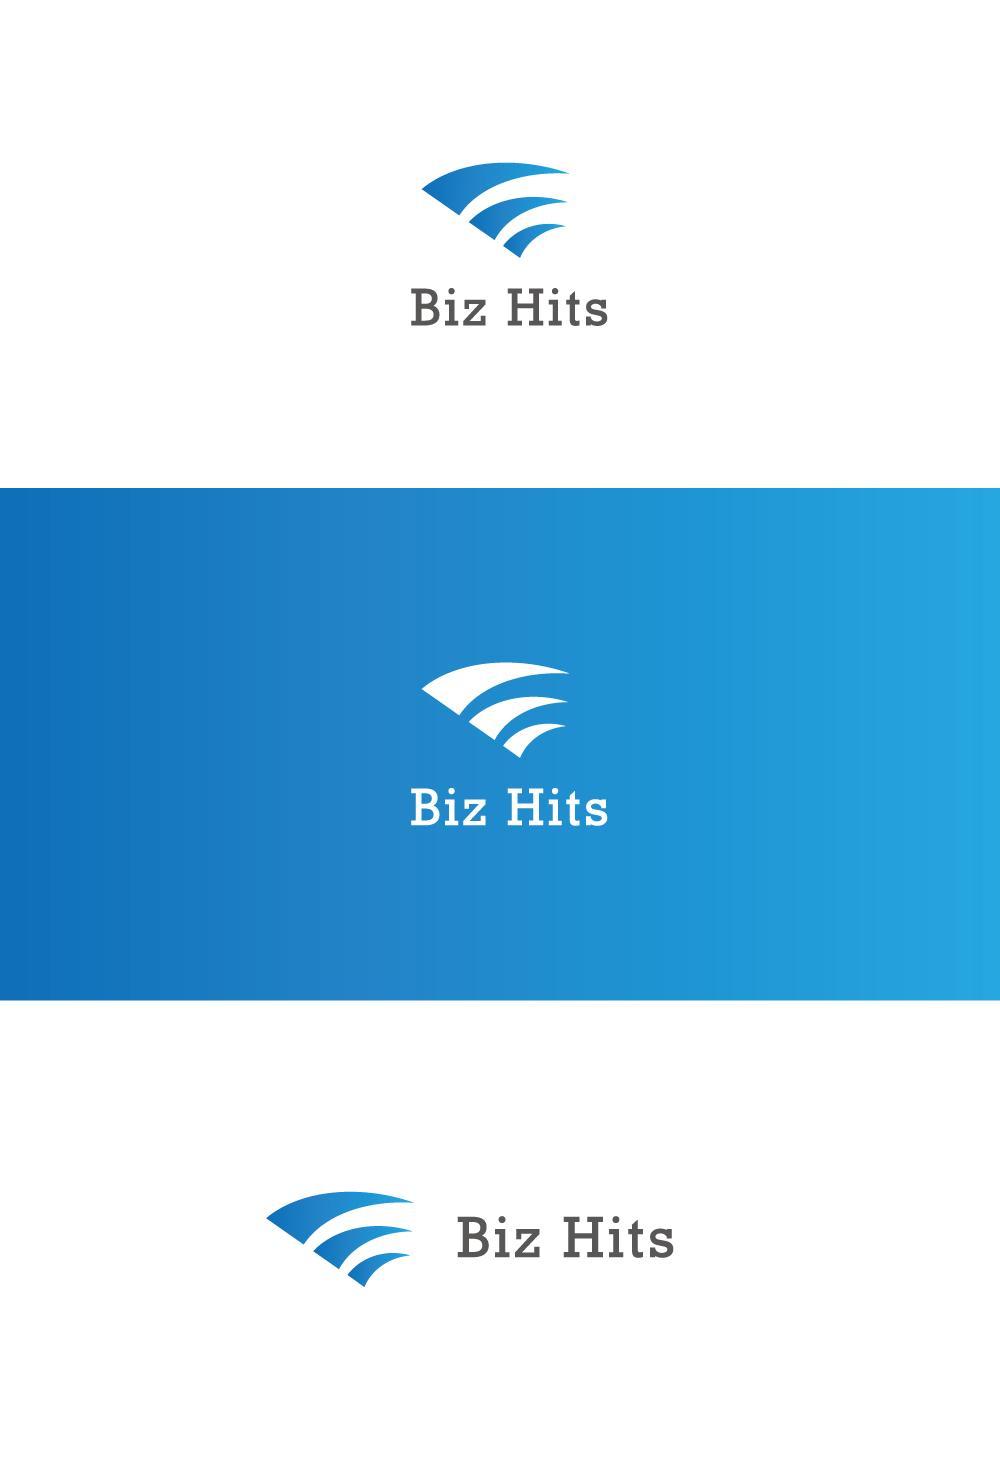 ビジネス系情報サイトへ使用するタイトルロゴデザインを募集しています